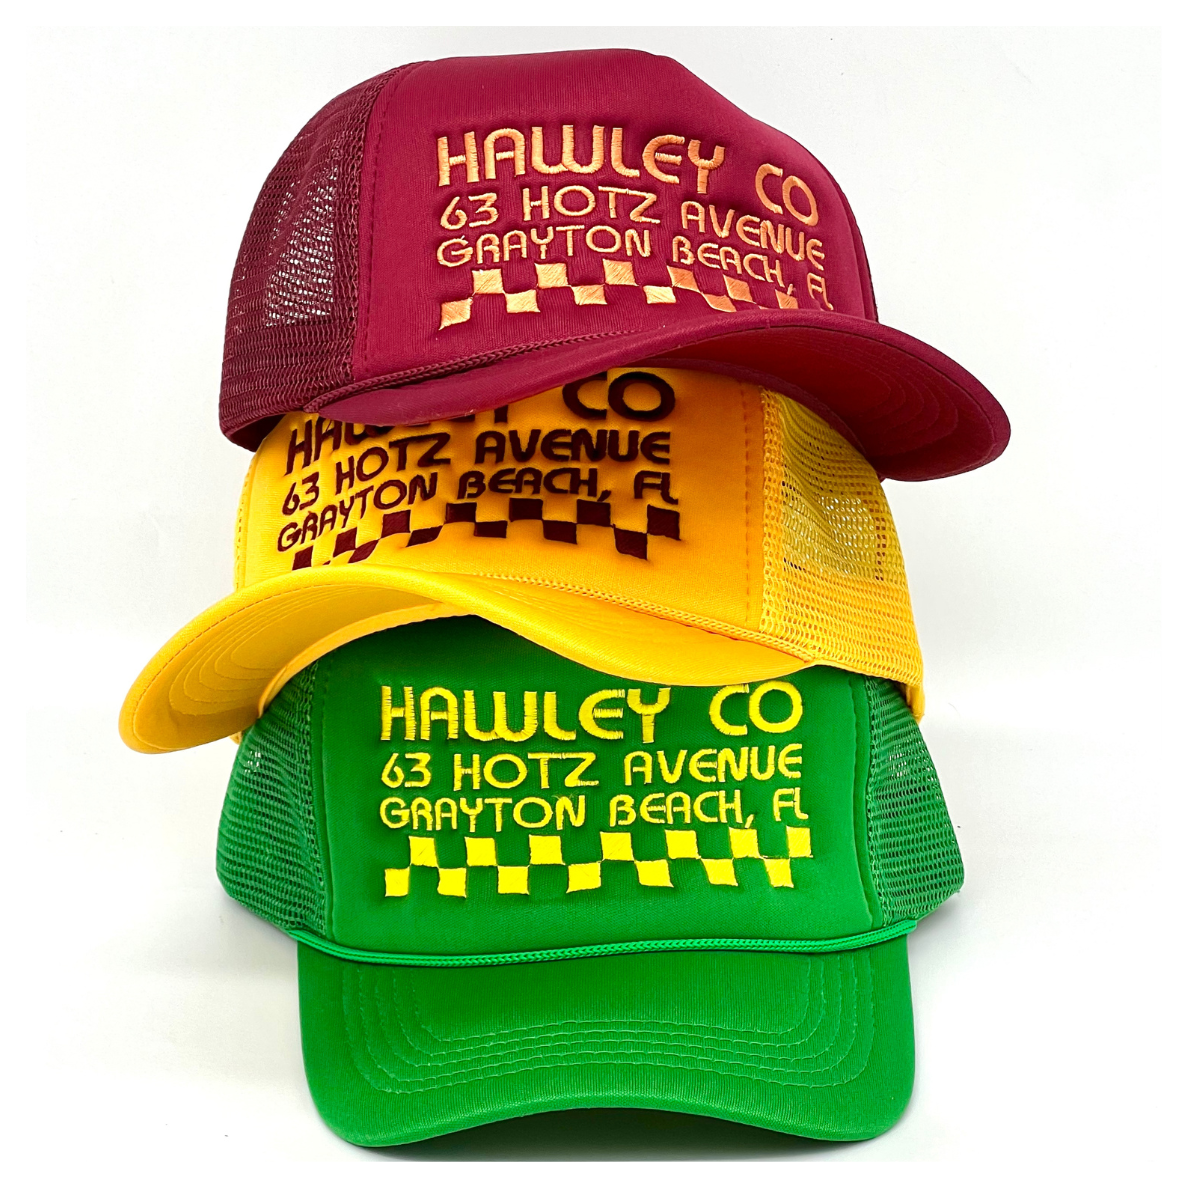 Hawley Staff Hat